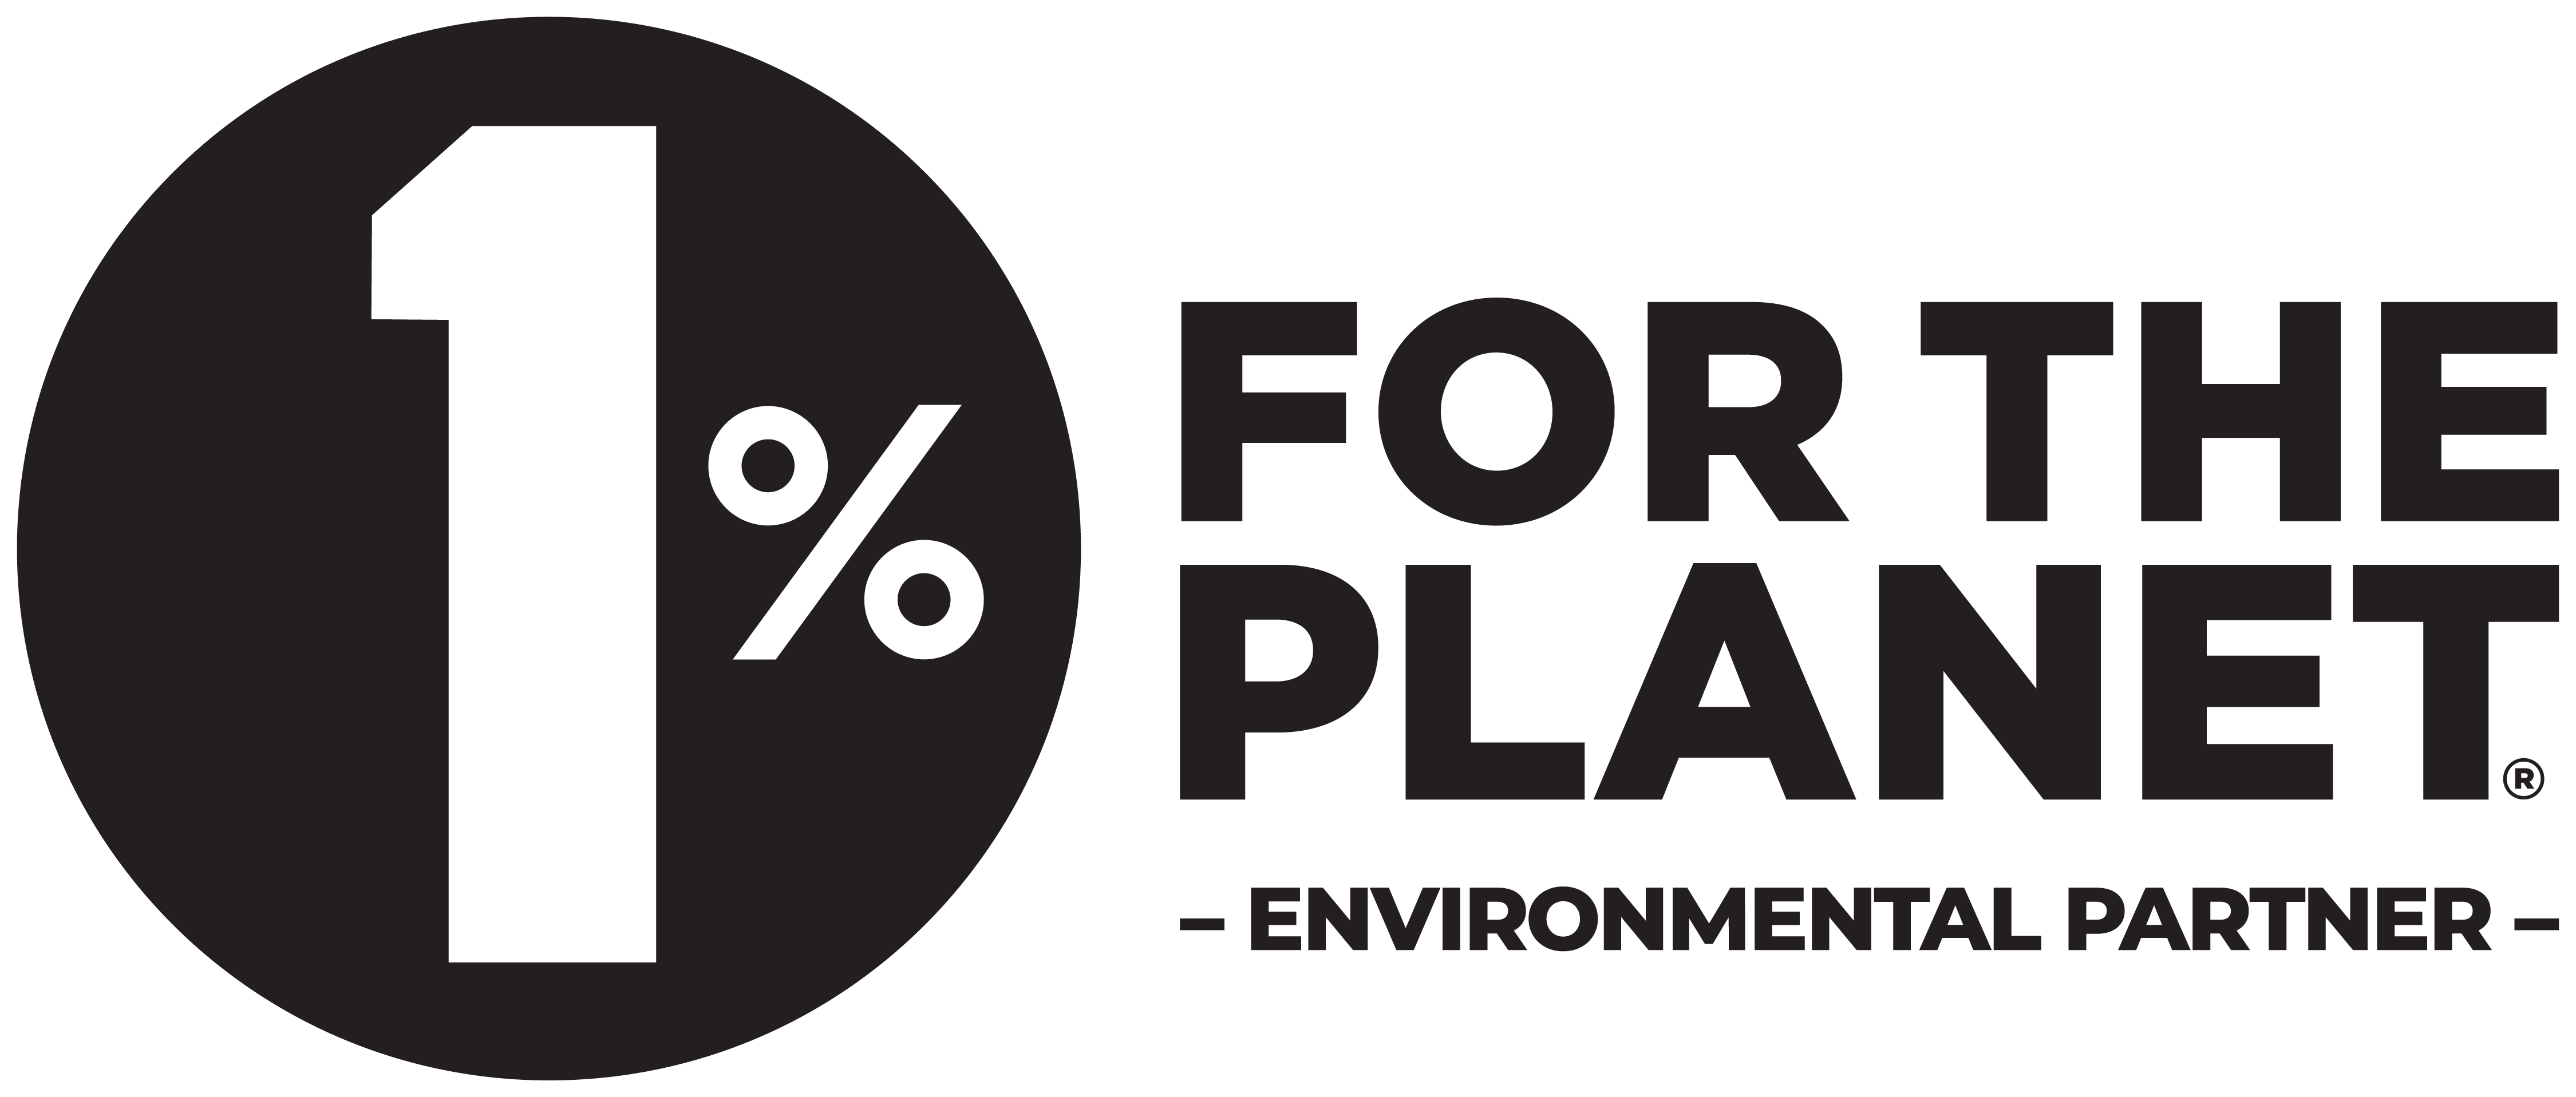 1% For the Planet - Environmental Partner logo